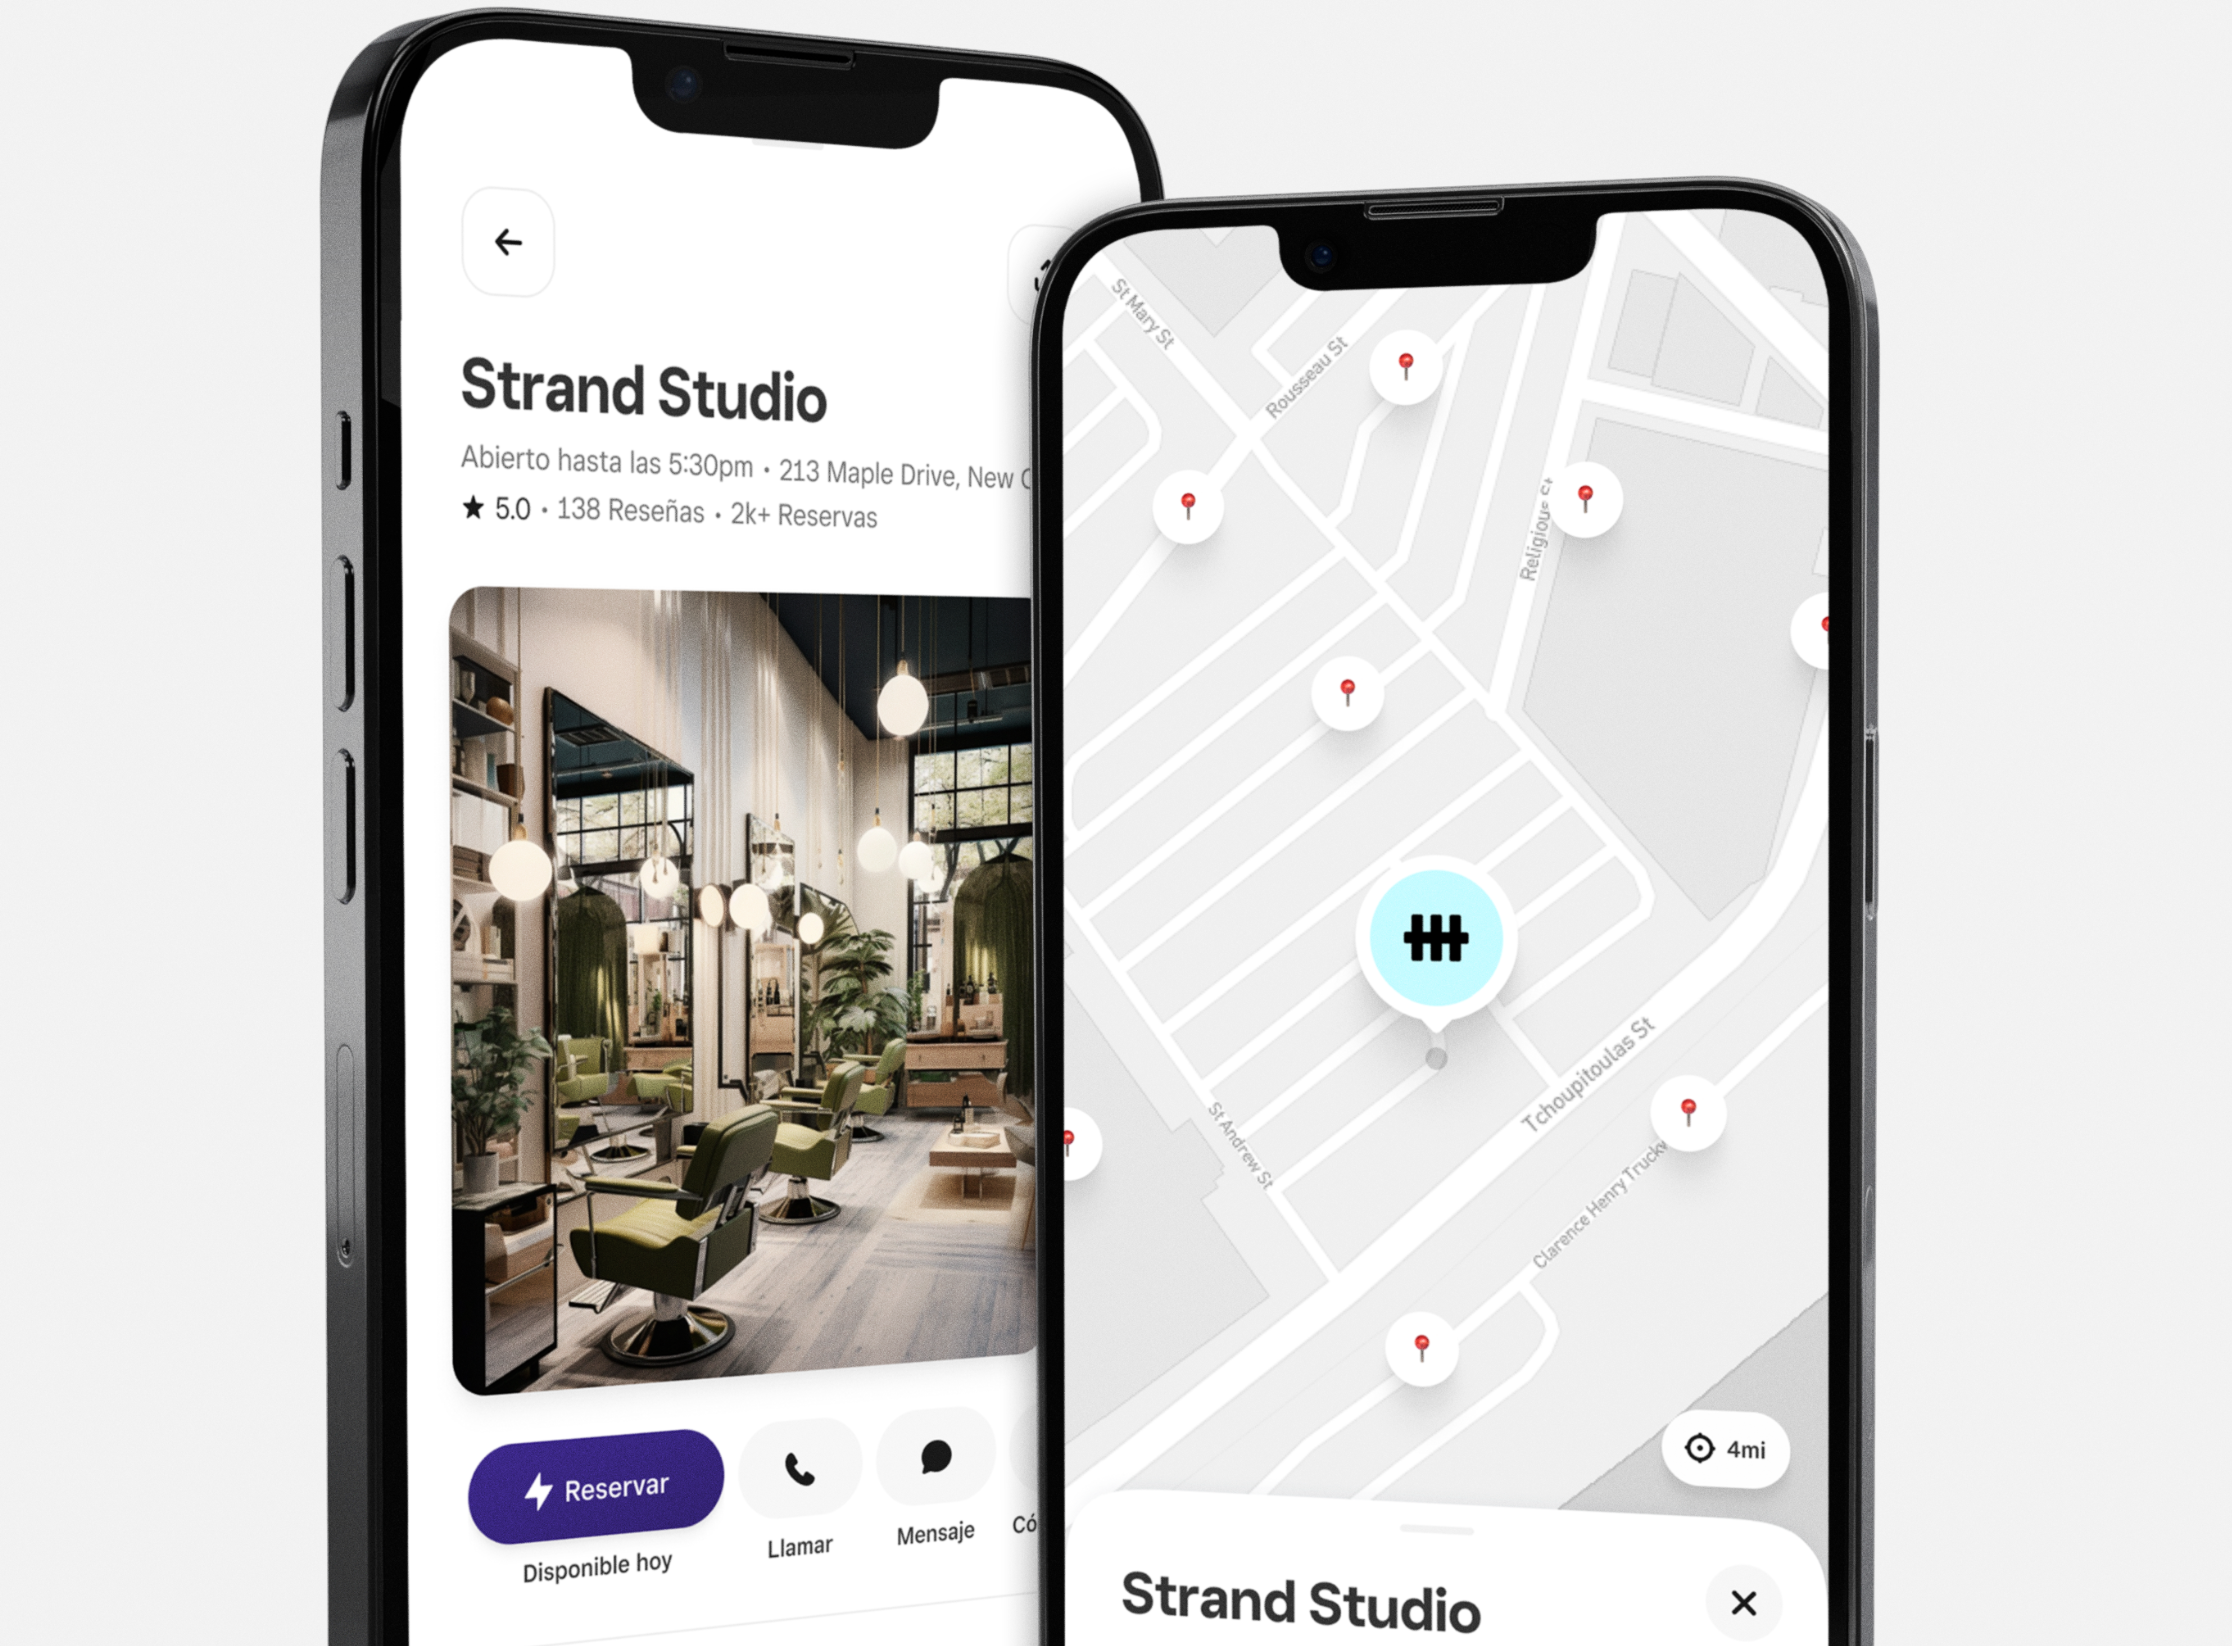 Dos teléfonos uno al lado del otro. Una pantalla del teléfono muestra el nombre del perfil y la imagen de un negocio llamado Strand Studio. La otra pantalla muestra un mapa con la ubicación de Strand Studio.